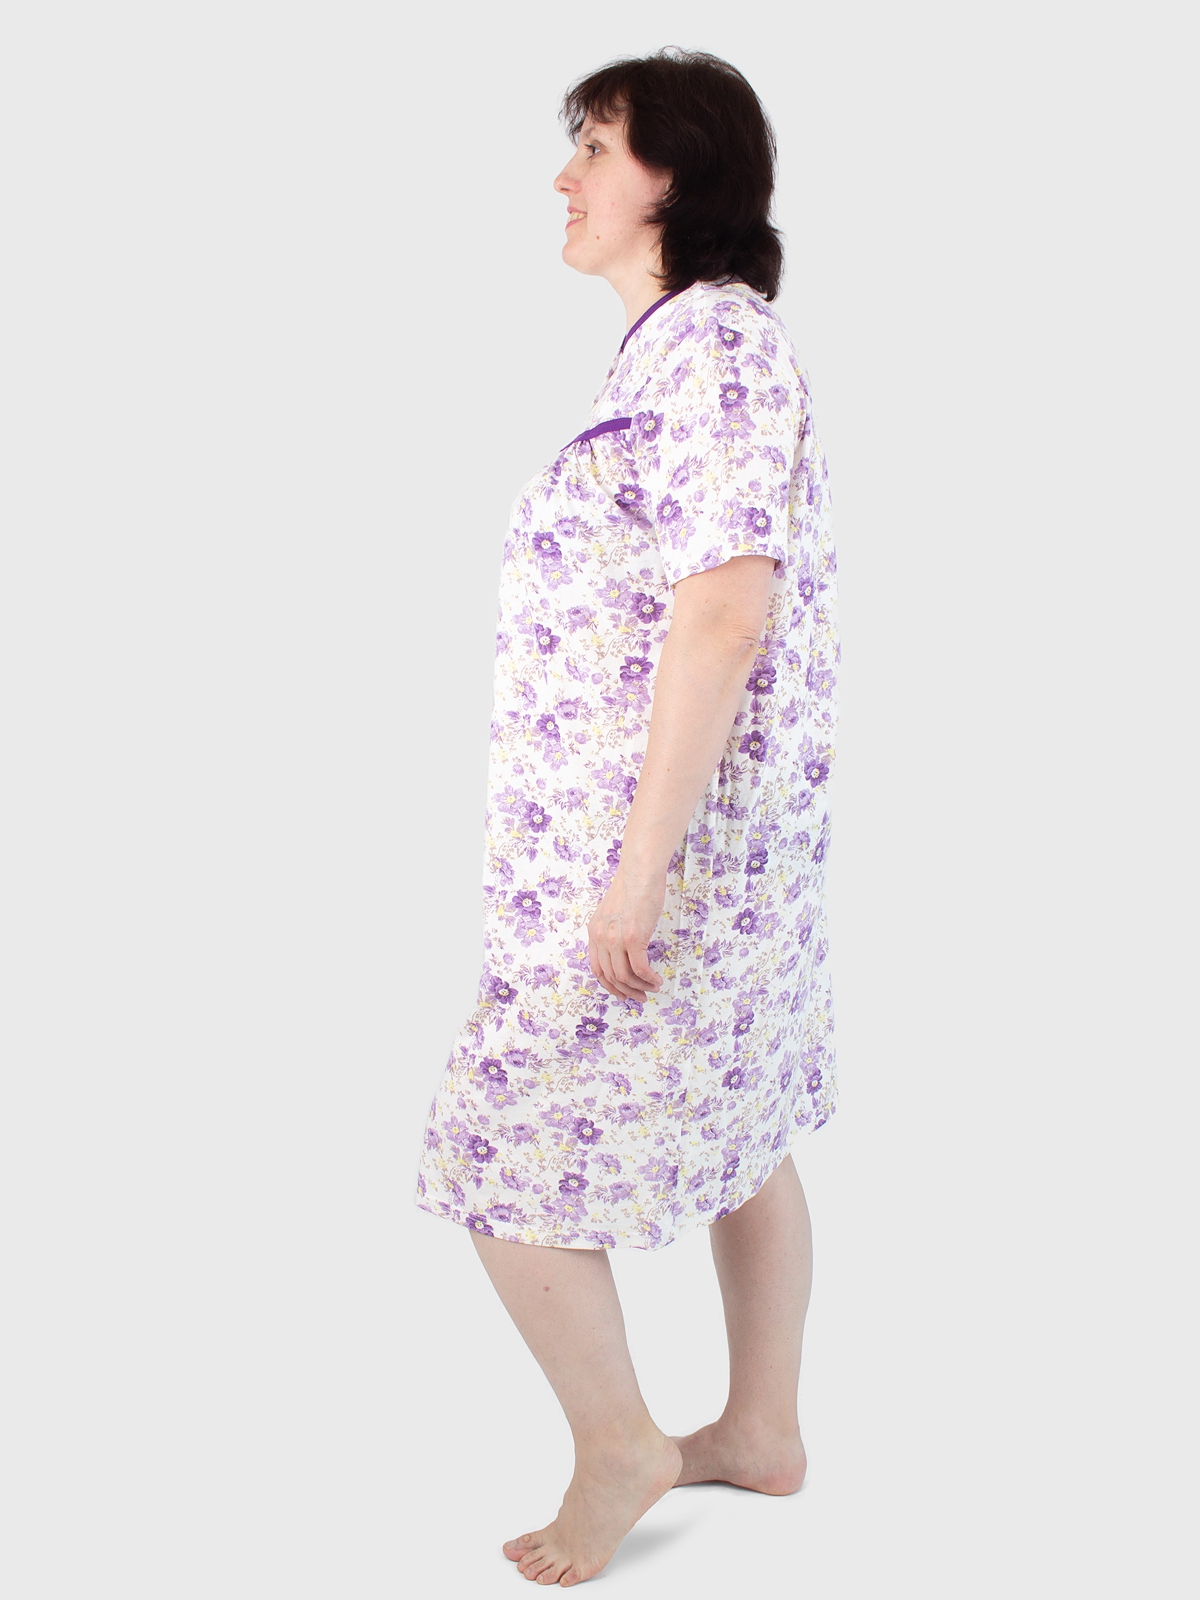 Сорочка ночная женская  фото в интернет-магазин TREND